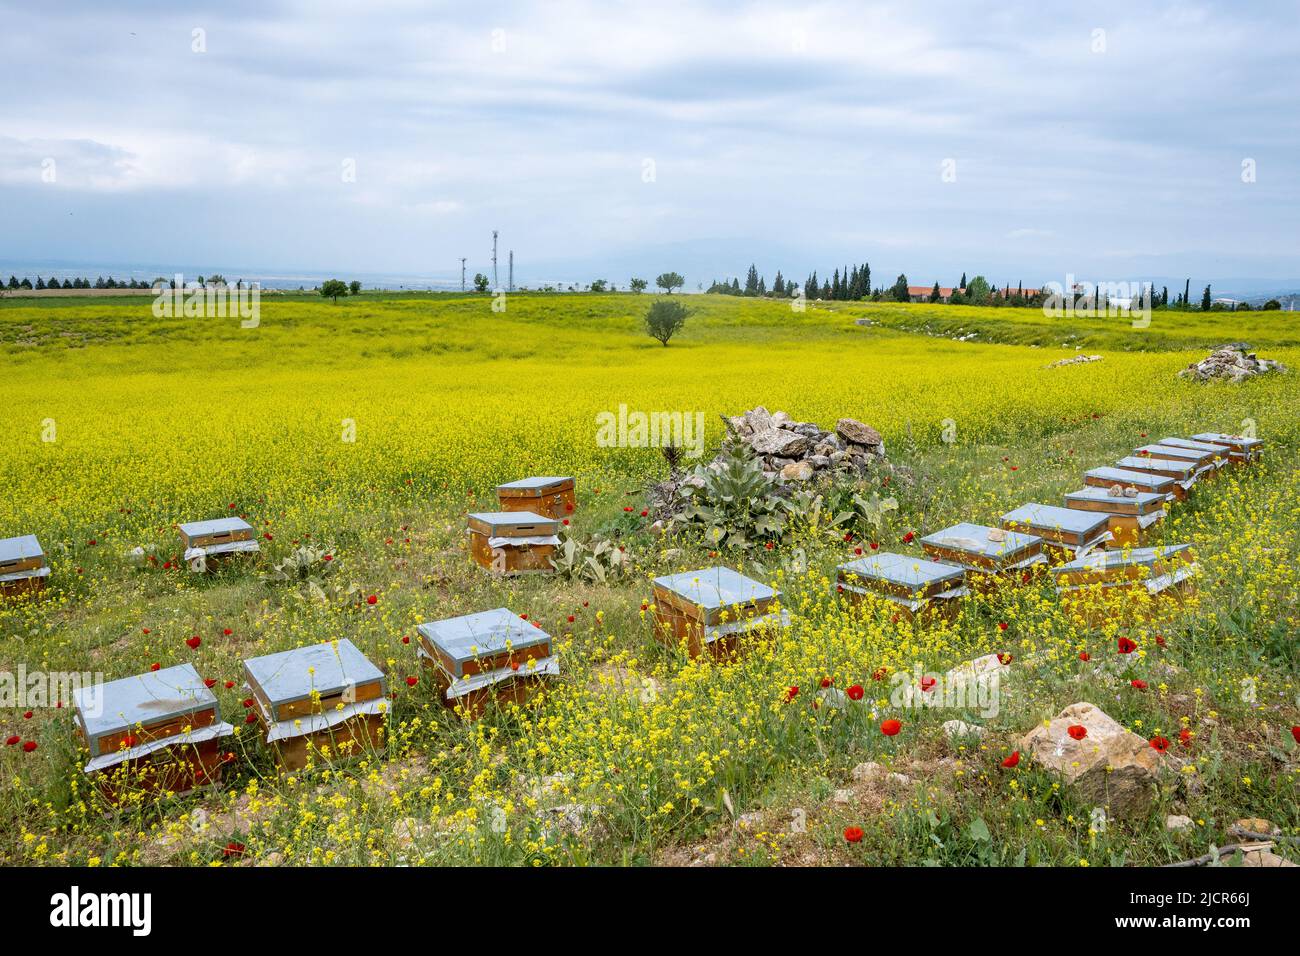 Les boîtes pleines d'abeilles se nourrissent de fleurs sauvages. Pamukkale, Türkiye. Banque D'Images